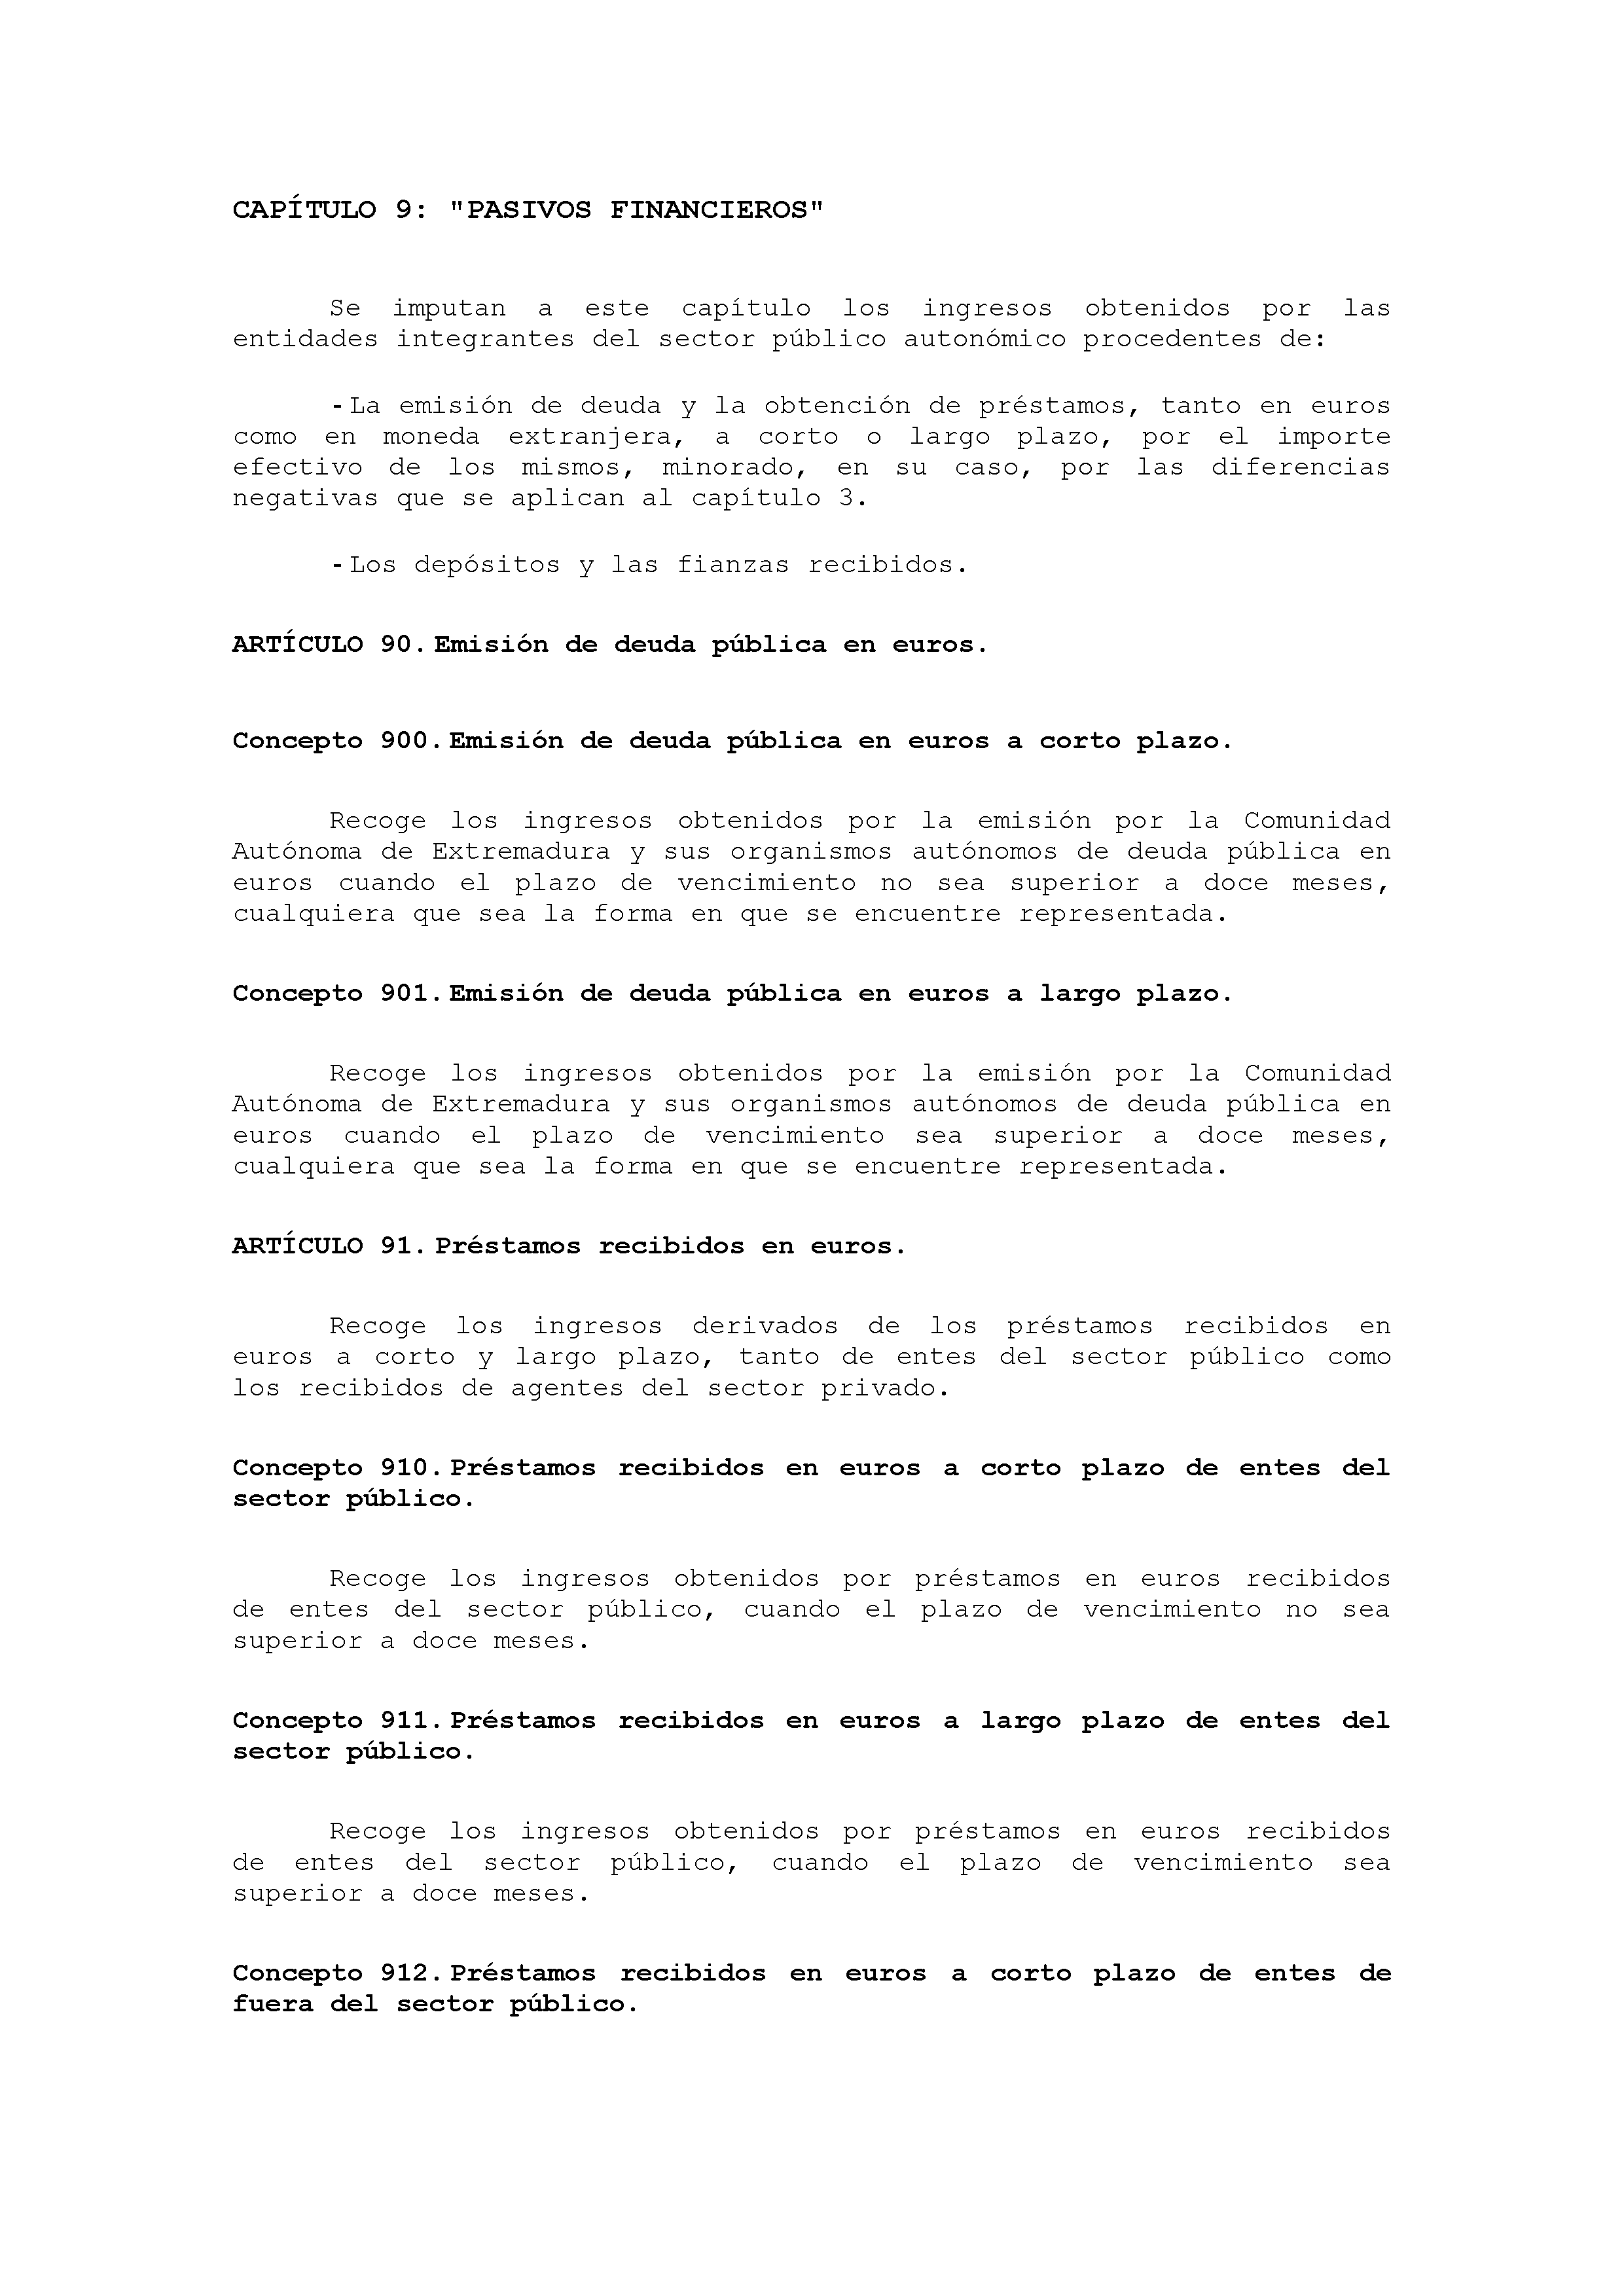 ANEXO VIII CÓDIGO DE LA CLASIFICACIÓN ECONÓMICA DE LOS INGRESOS PÚBLICOS Pag 26